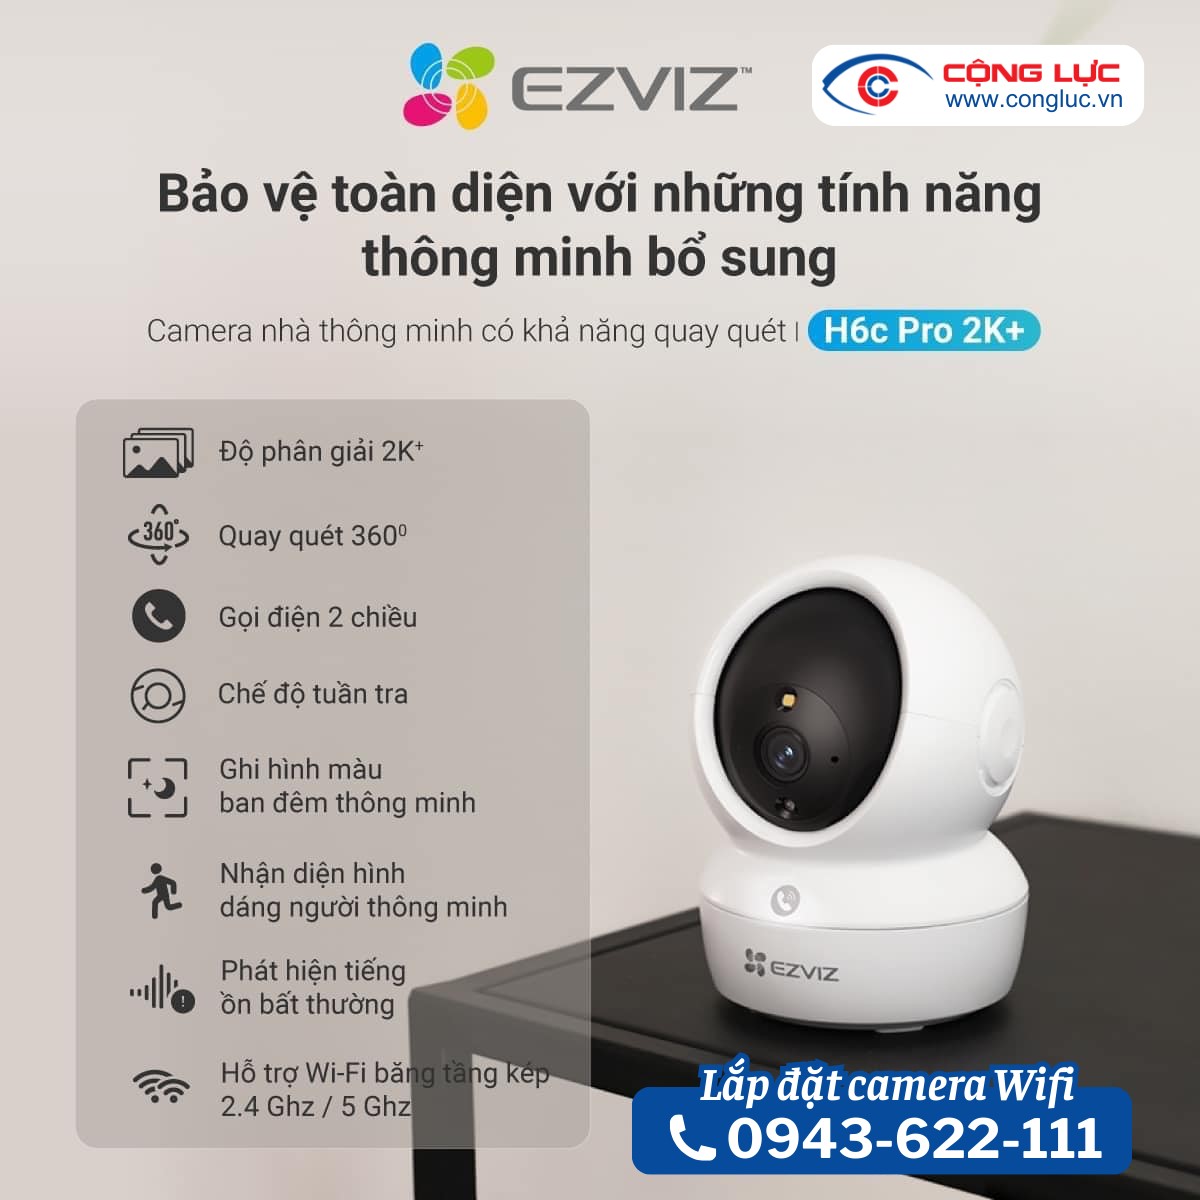 lắp camera wifi ezviz h6c pro 4mp 2K+ chính hãng giá rẻ nhất Hải Phòng